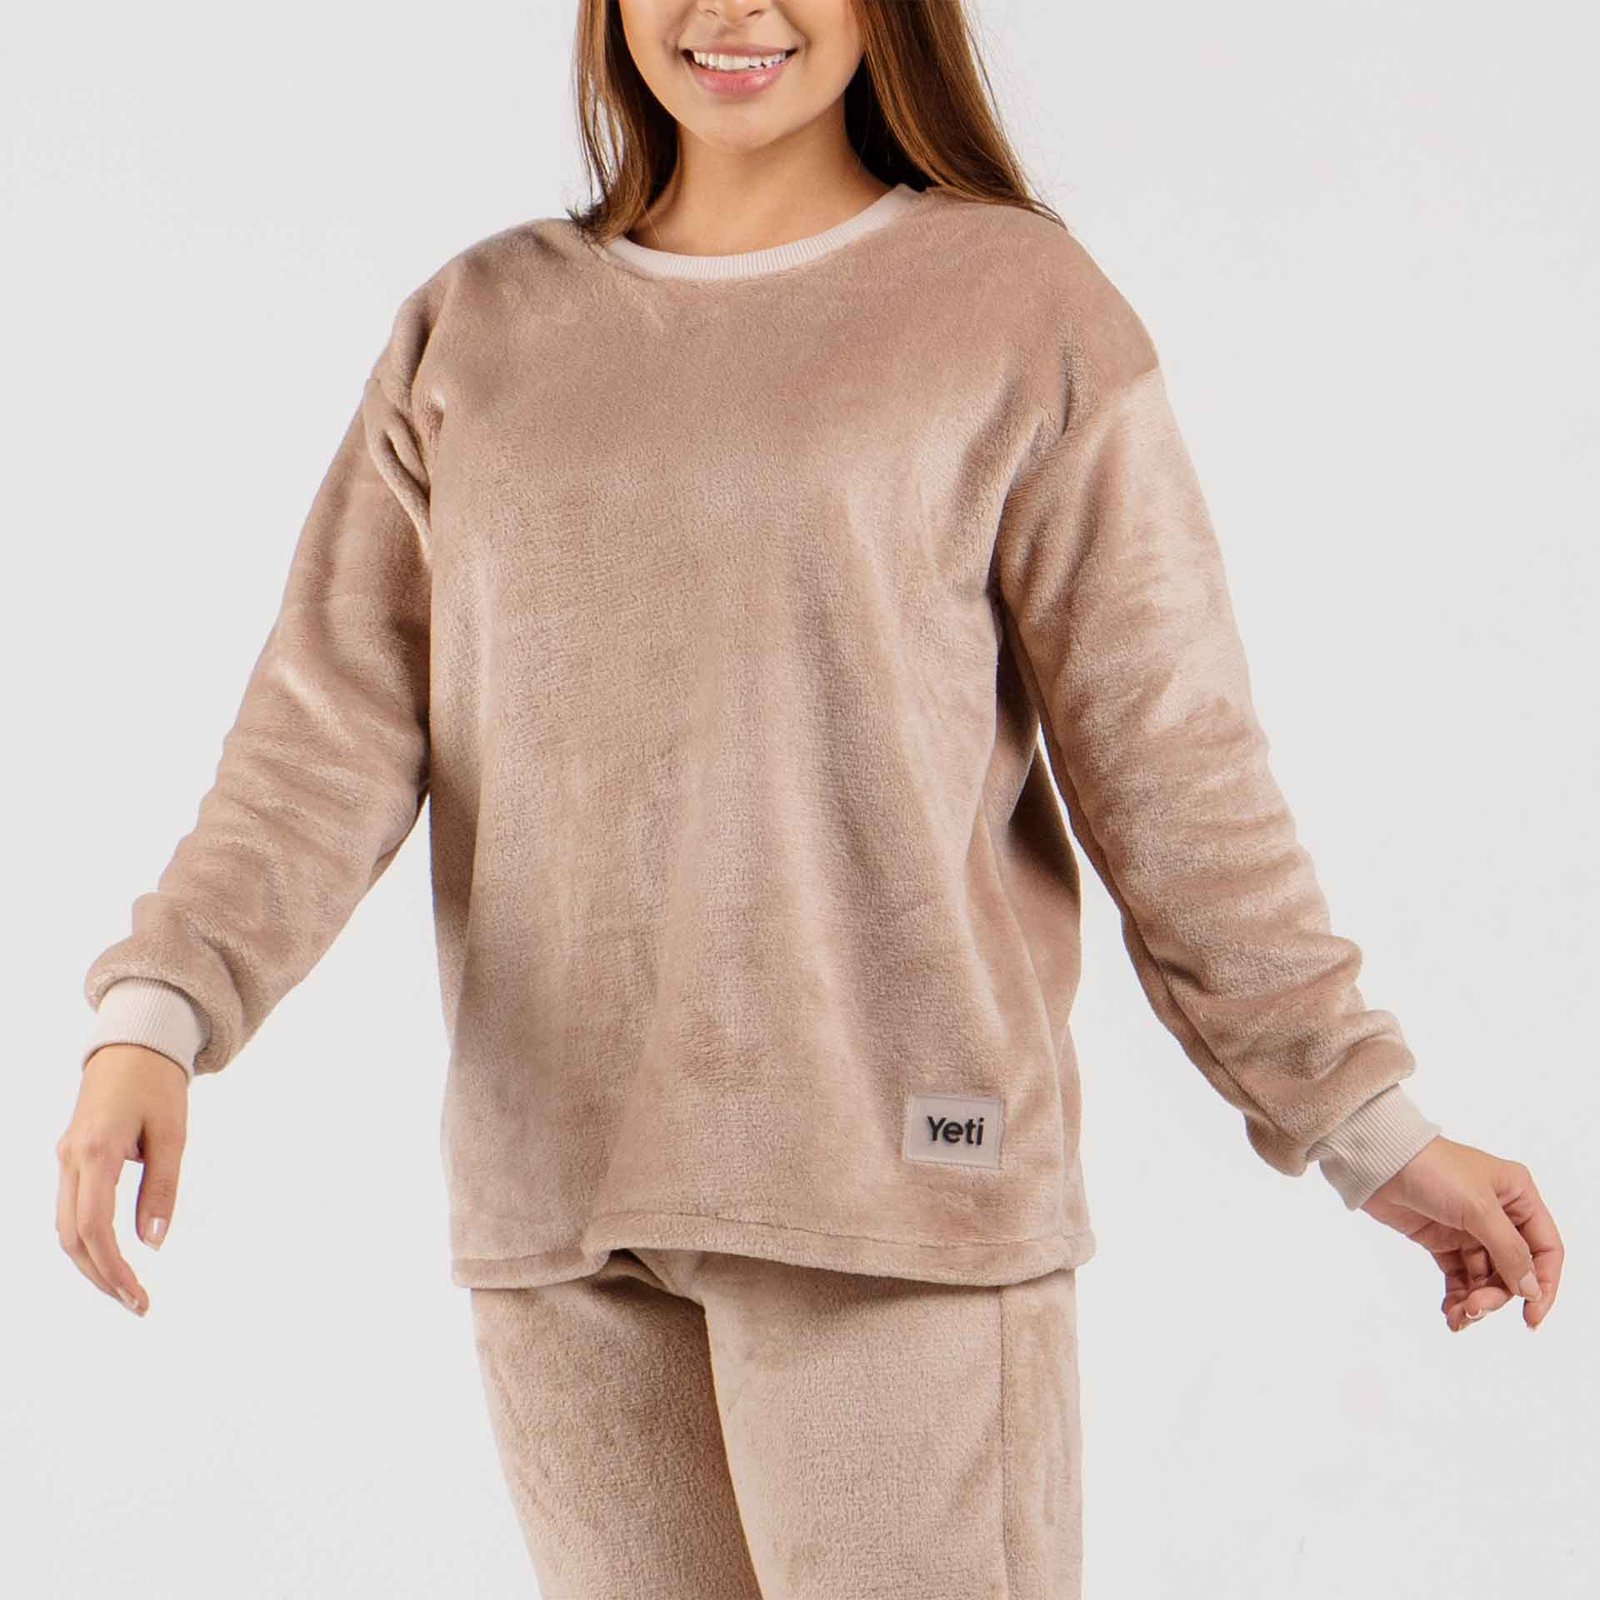 Pijama para mujer térmica Camibuzo pijama mujer Yeti